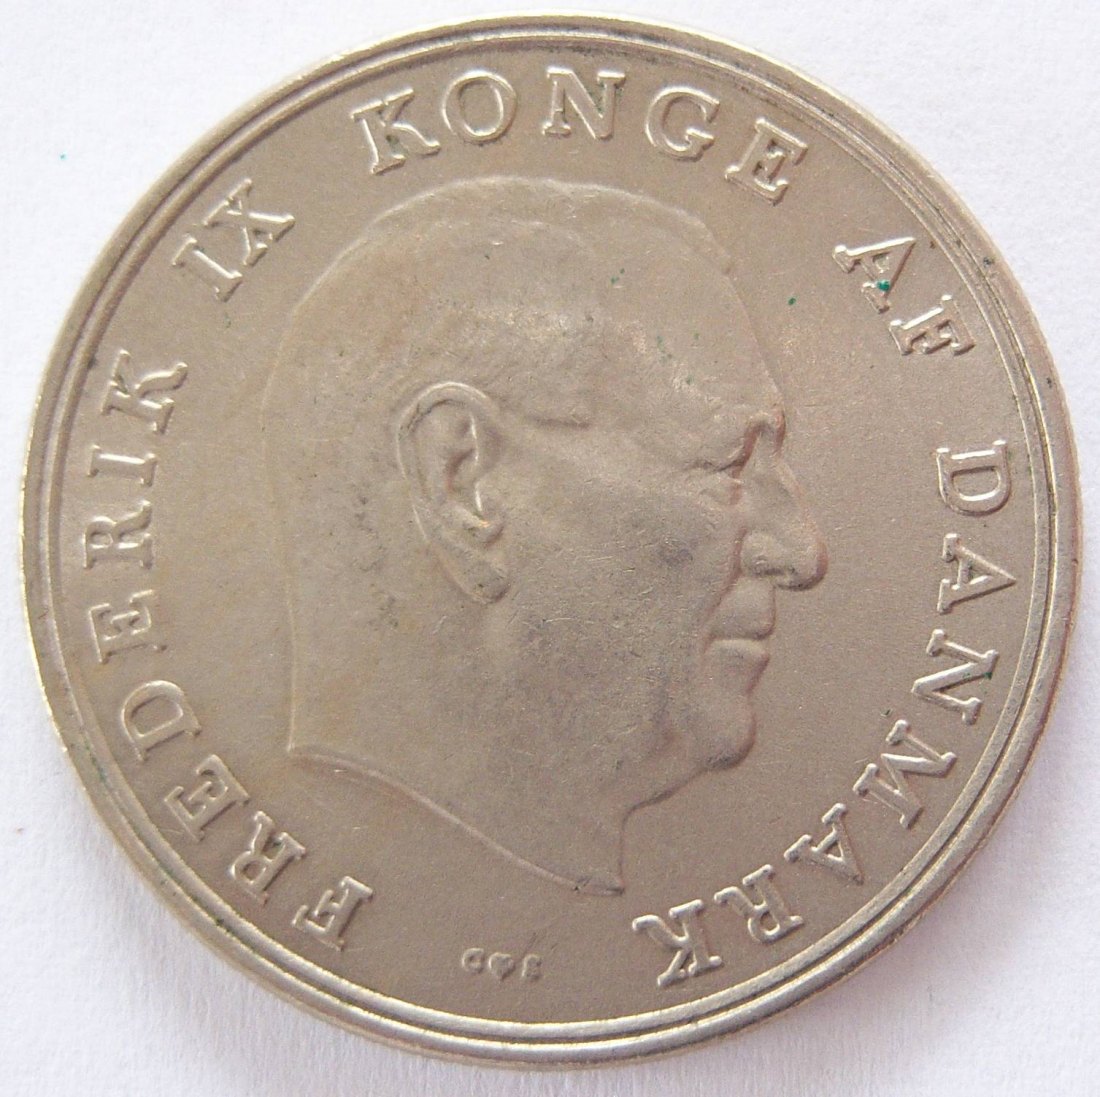  Dänemark 5 Kroner Kronen 1964   